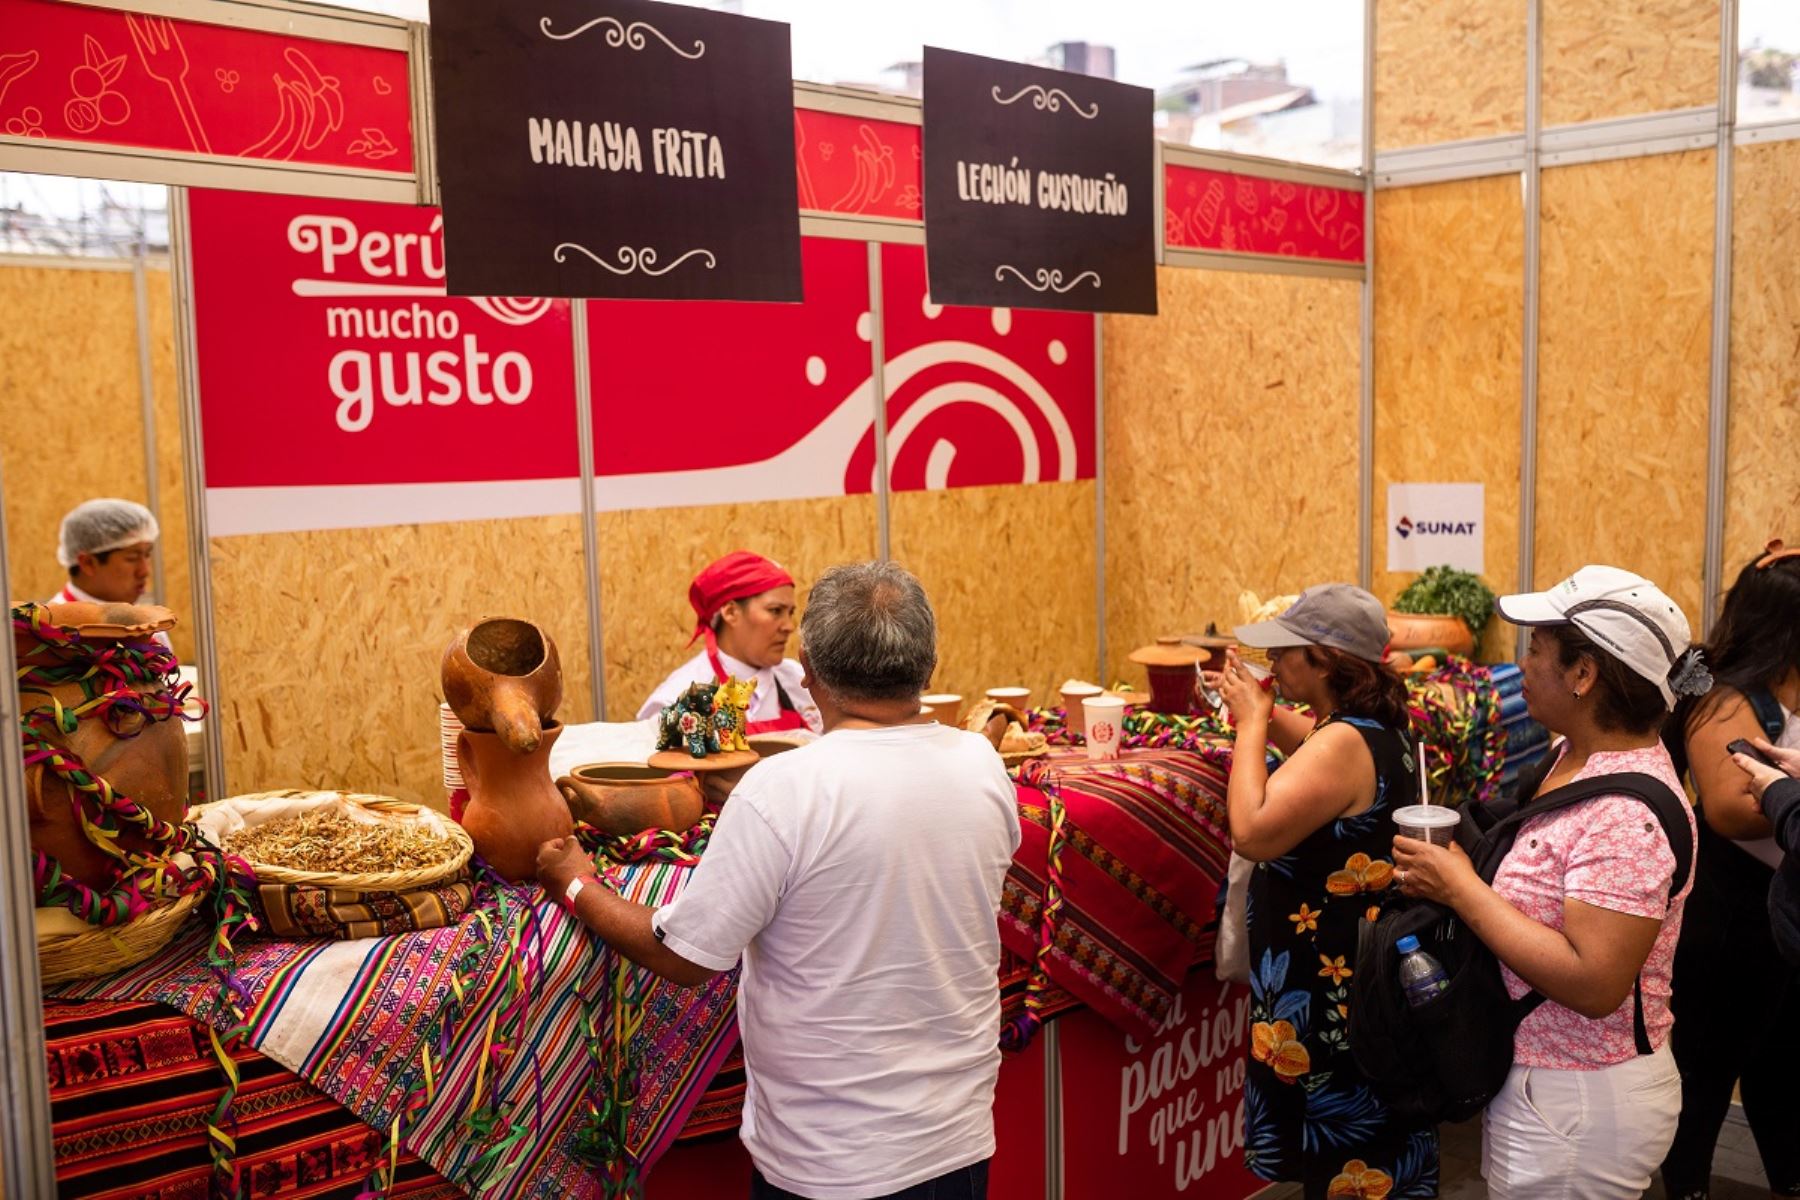 Feria gastronómica "Perú Mucho Gusto" realizada en la región Arequipa. Foto: Cortesía.